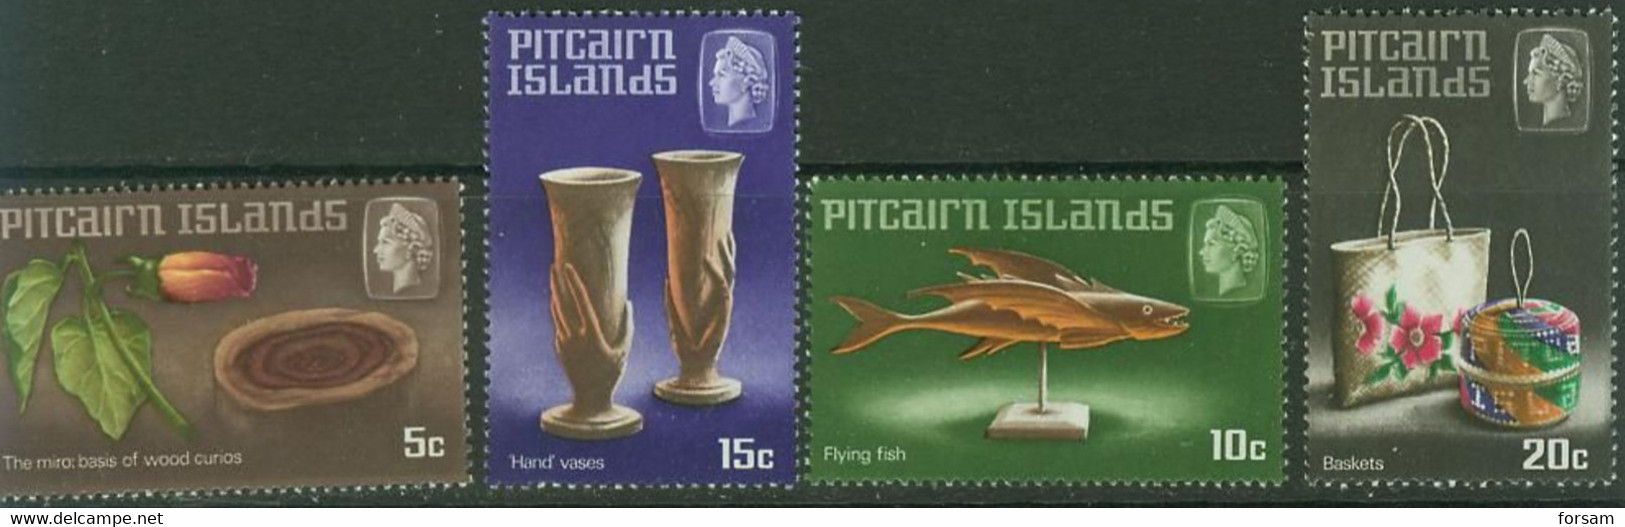 PITCAIRN ISLANDS..1968..Michel # 91-94...MNH...MiCV - 5 Euro. - Islas De Pitcairn